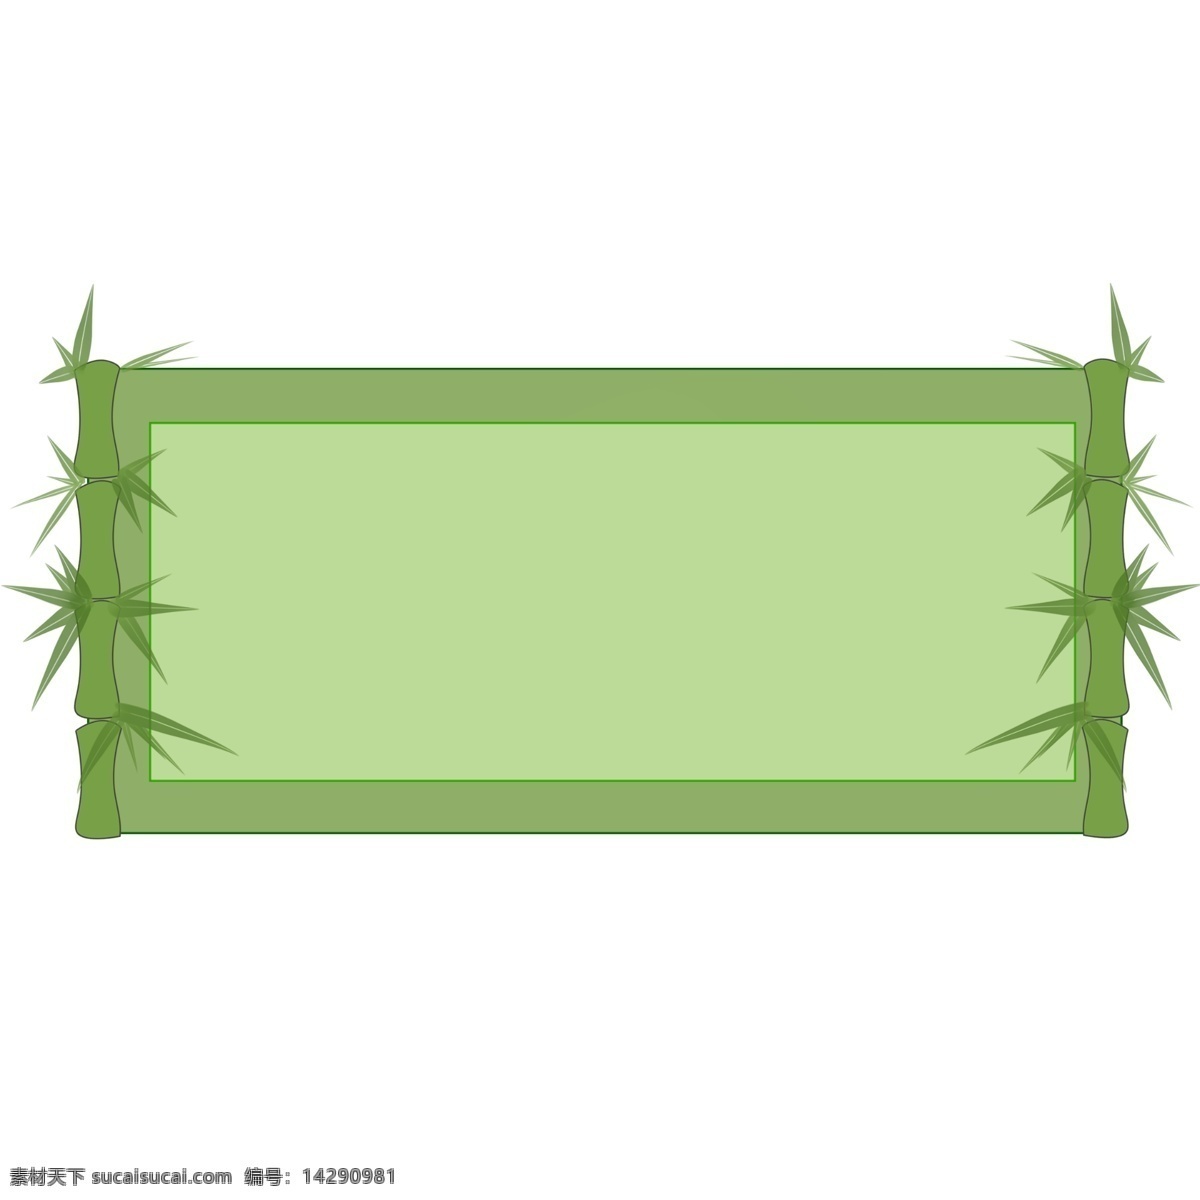 绿色 长方形 边框 插图 植物边框 绿色边框 长方形边框 卡通边框 图案边框 边框设计 植物装饰